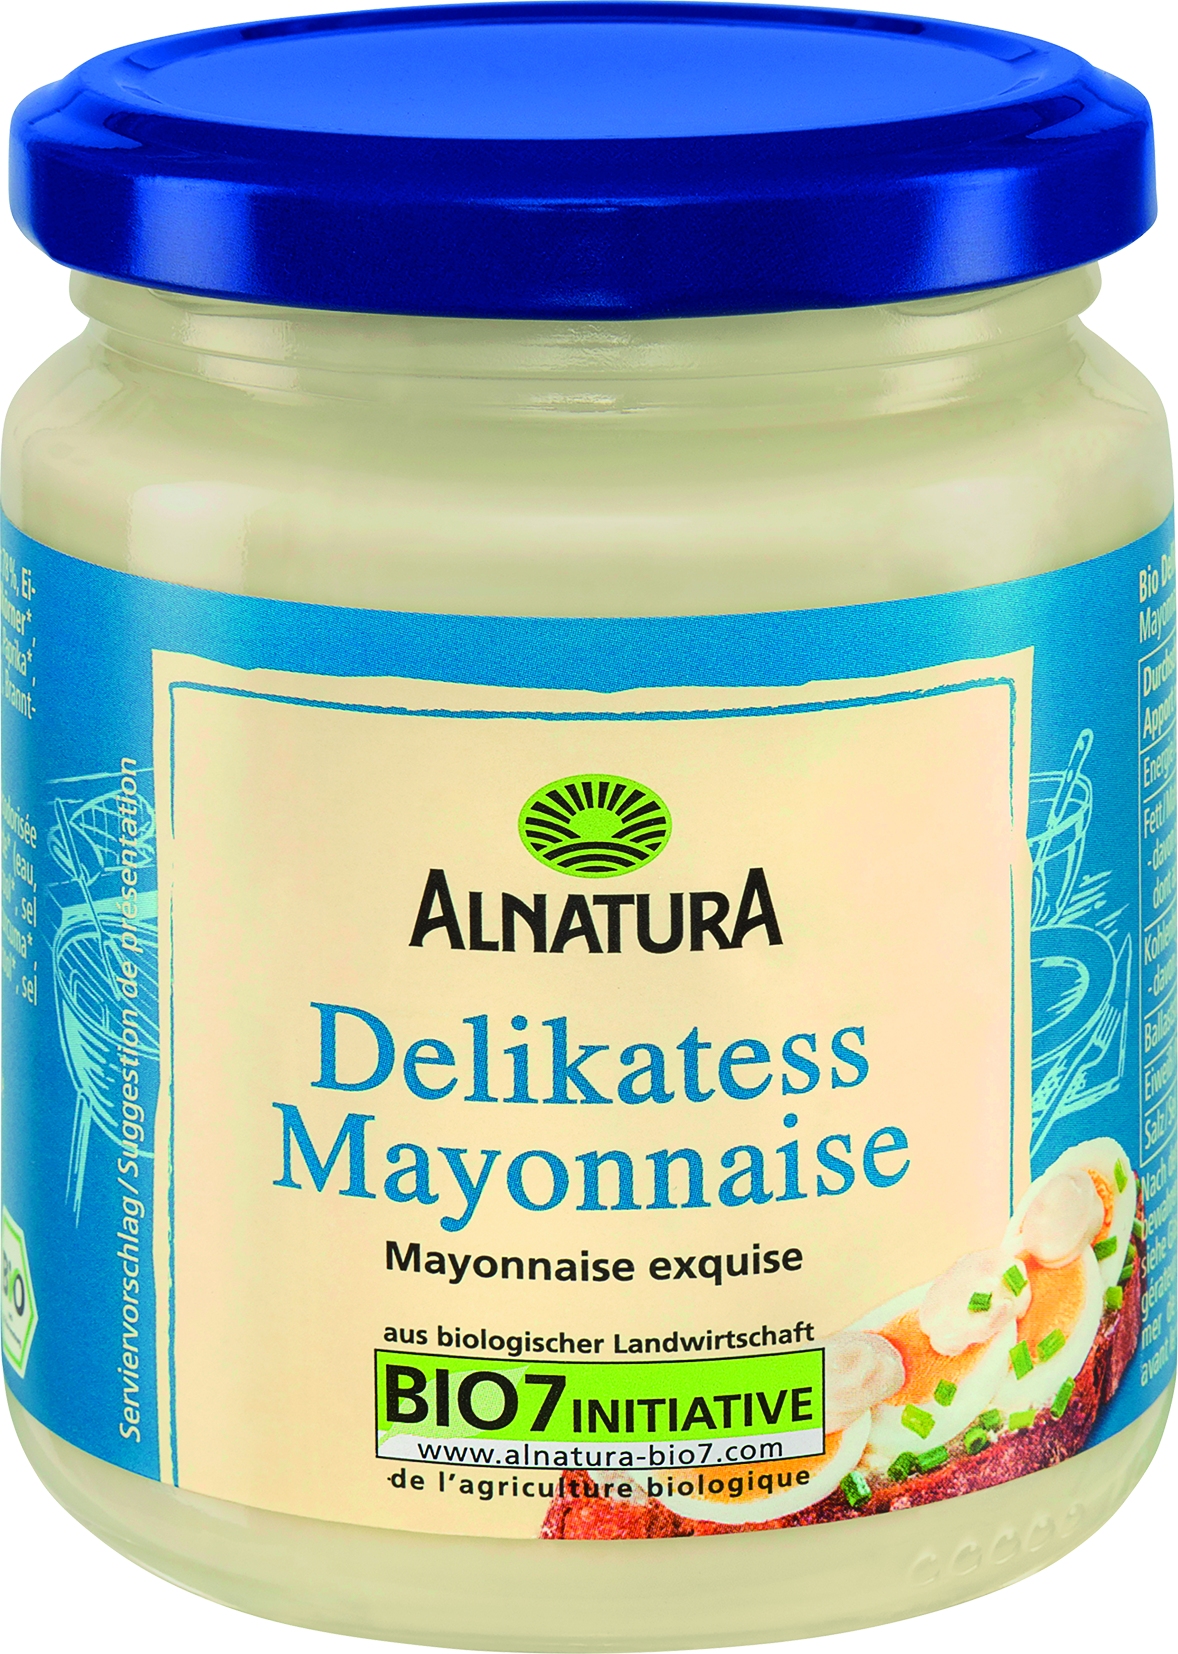 Delikates Mayonnaise   